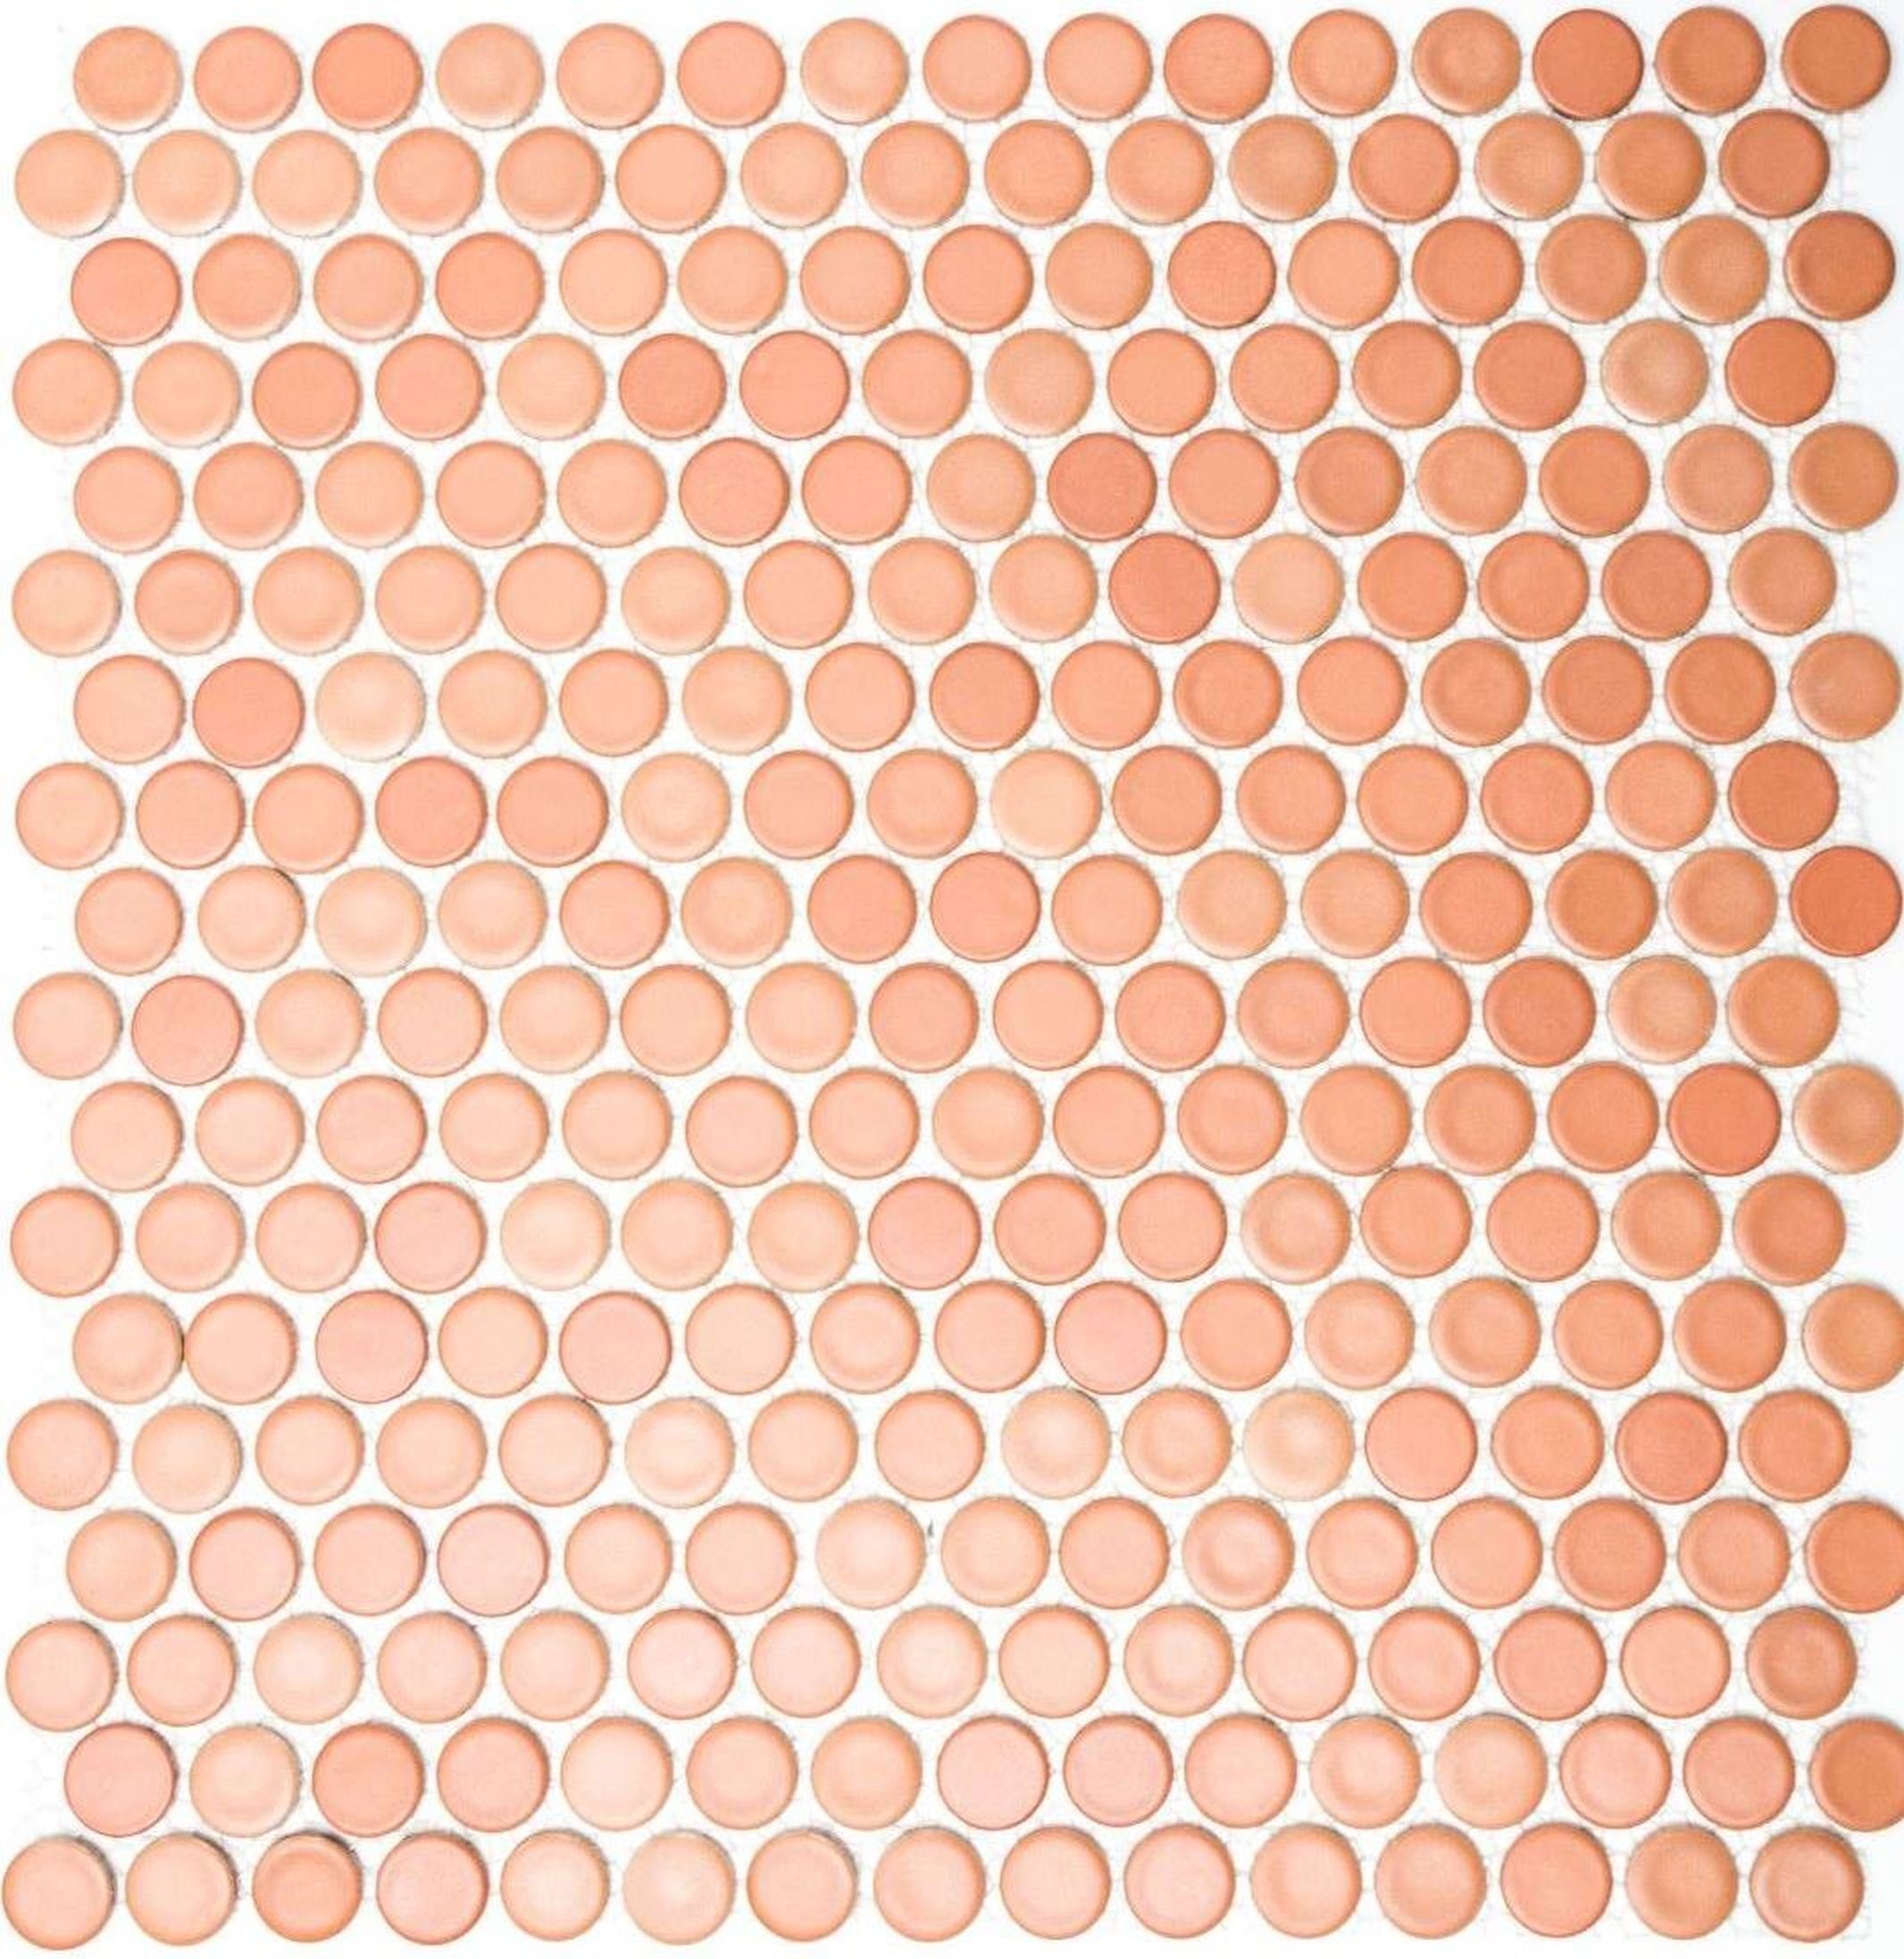 Matten 10 matt Mosaikfliesen / cotto Mosaikfliesen Mosani Keramikmosaik Knopf